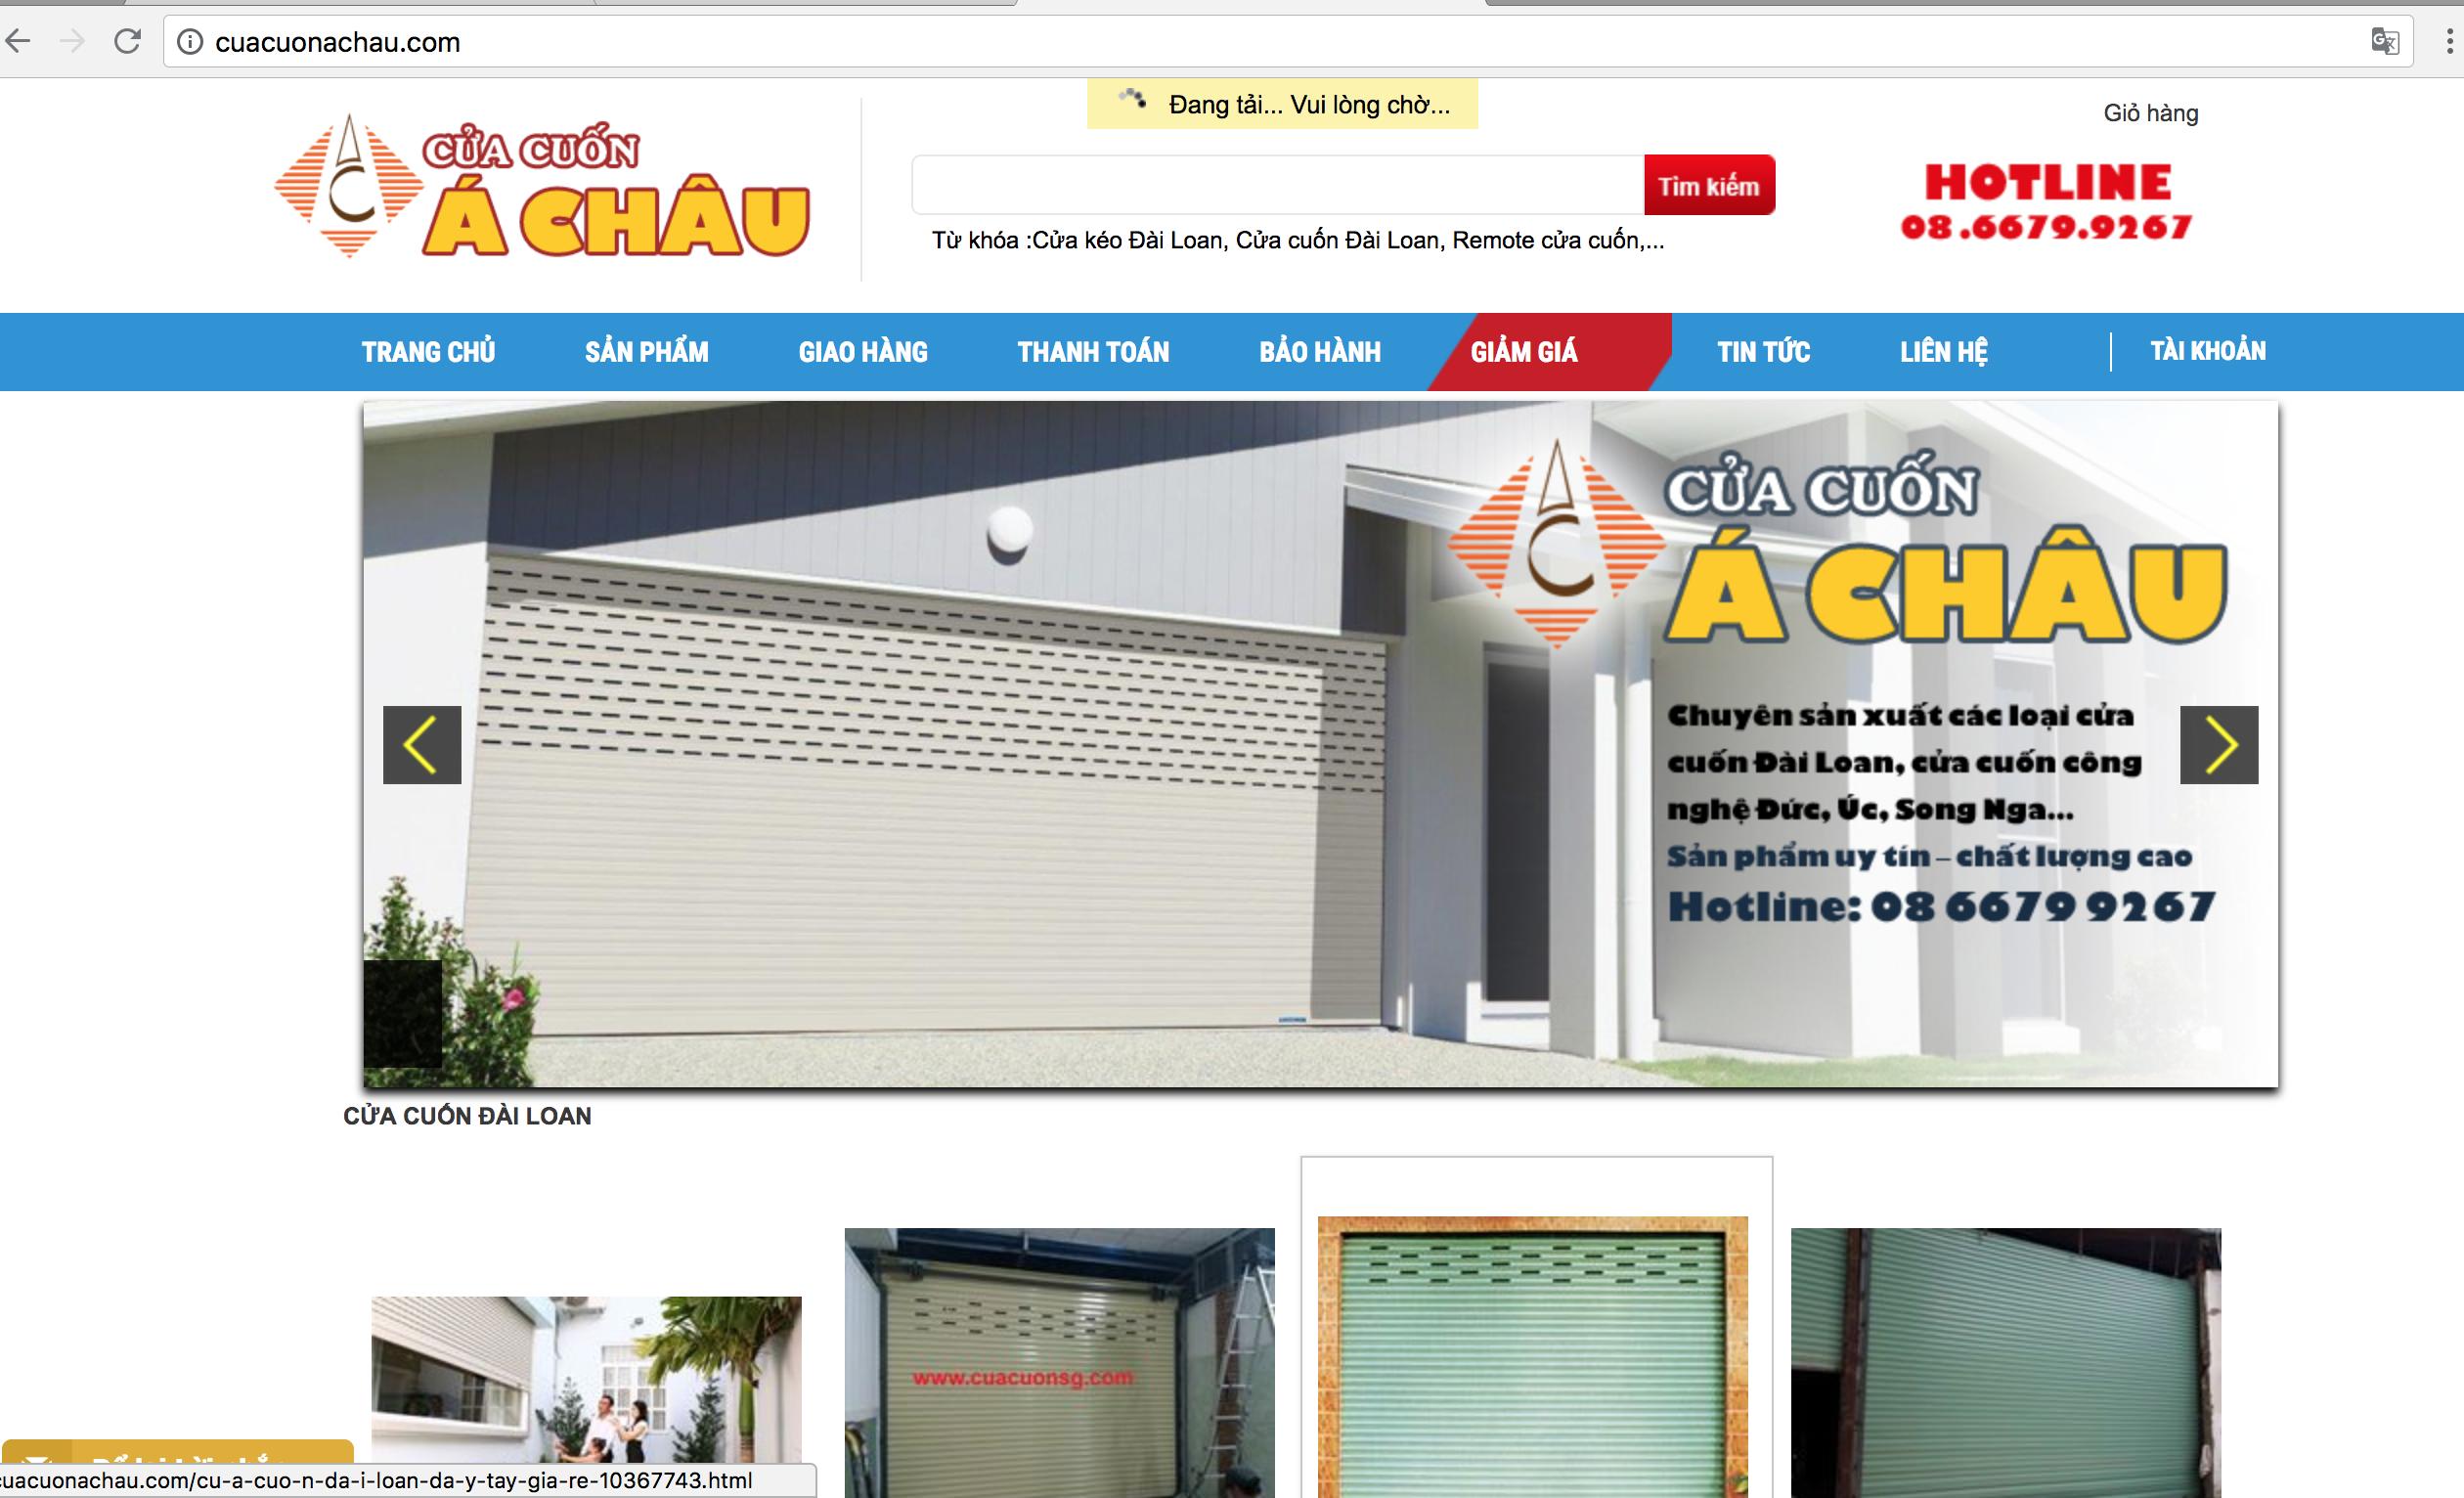 Website của Á Châu, có logo đặc trưng, tên miền là cuacuonachau.com